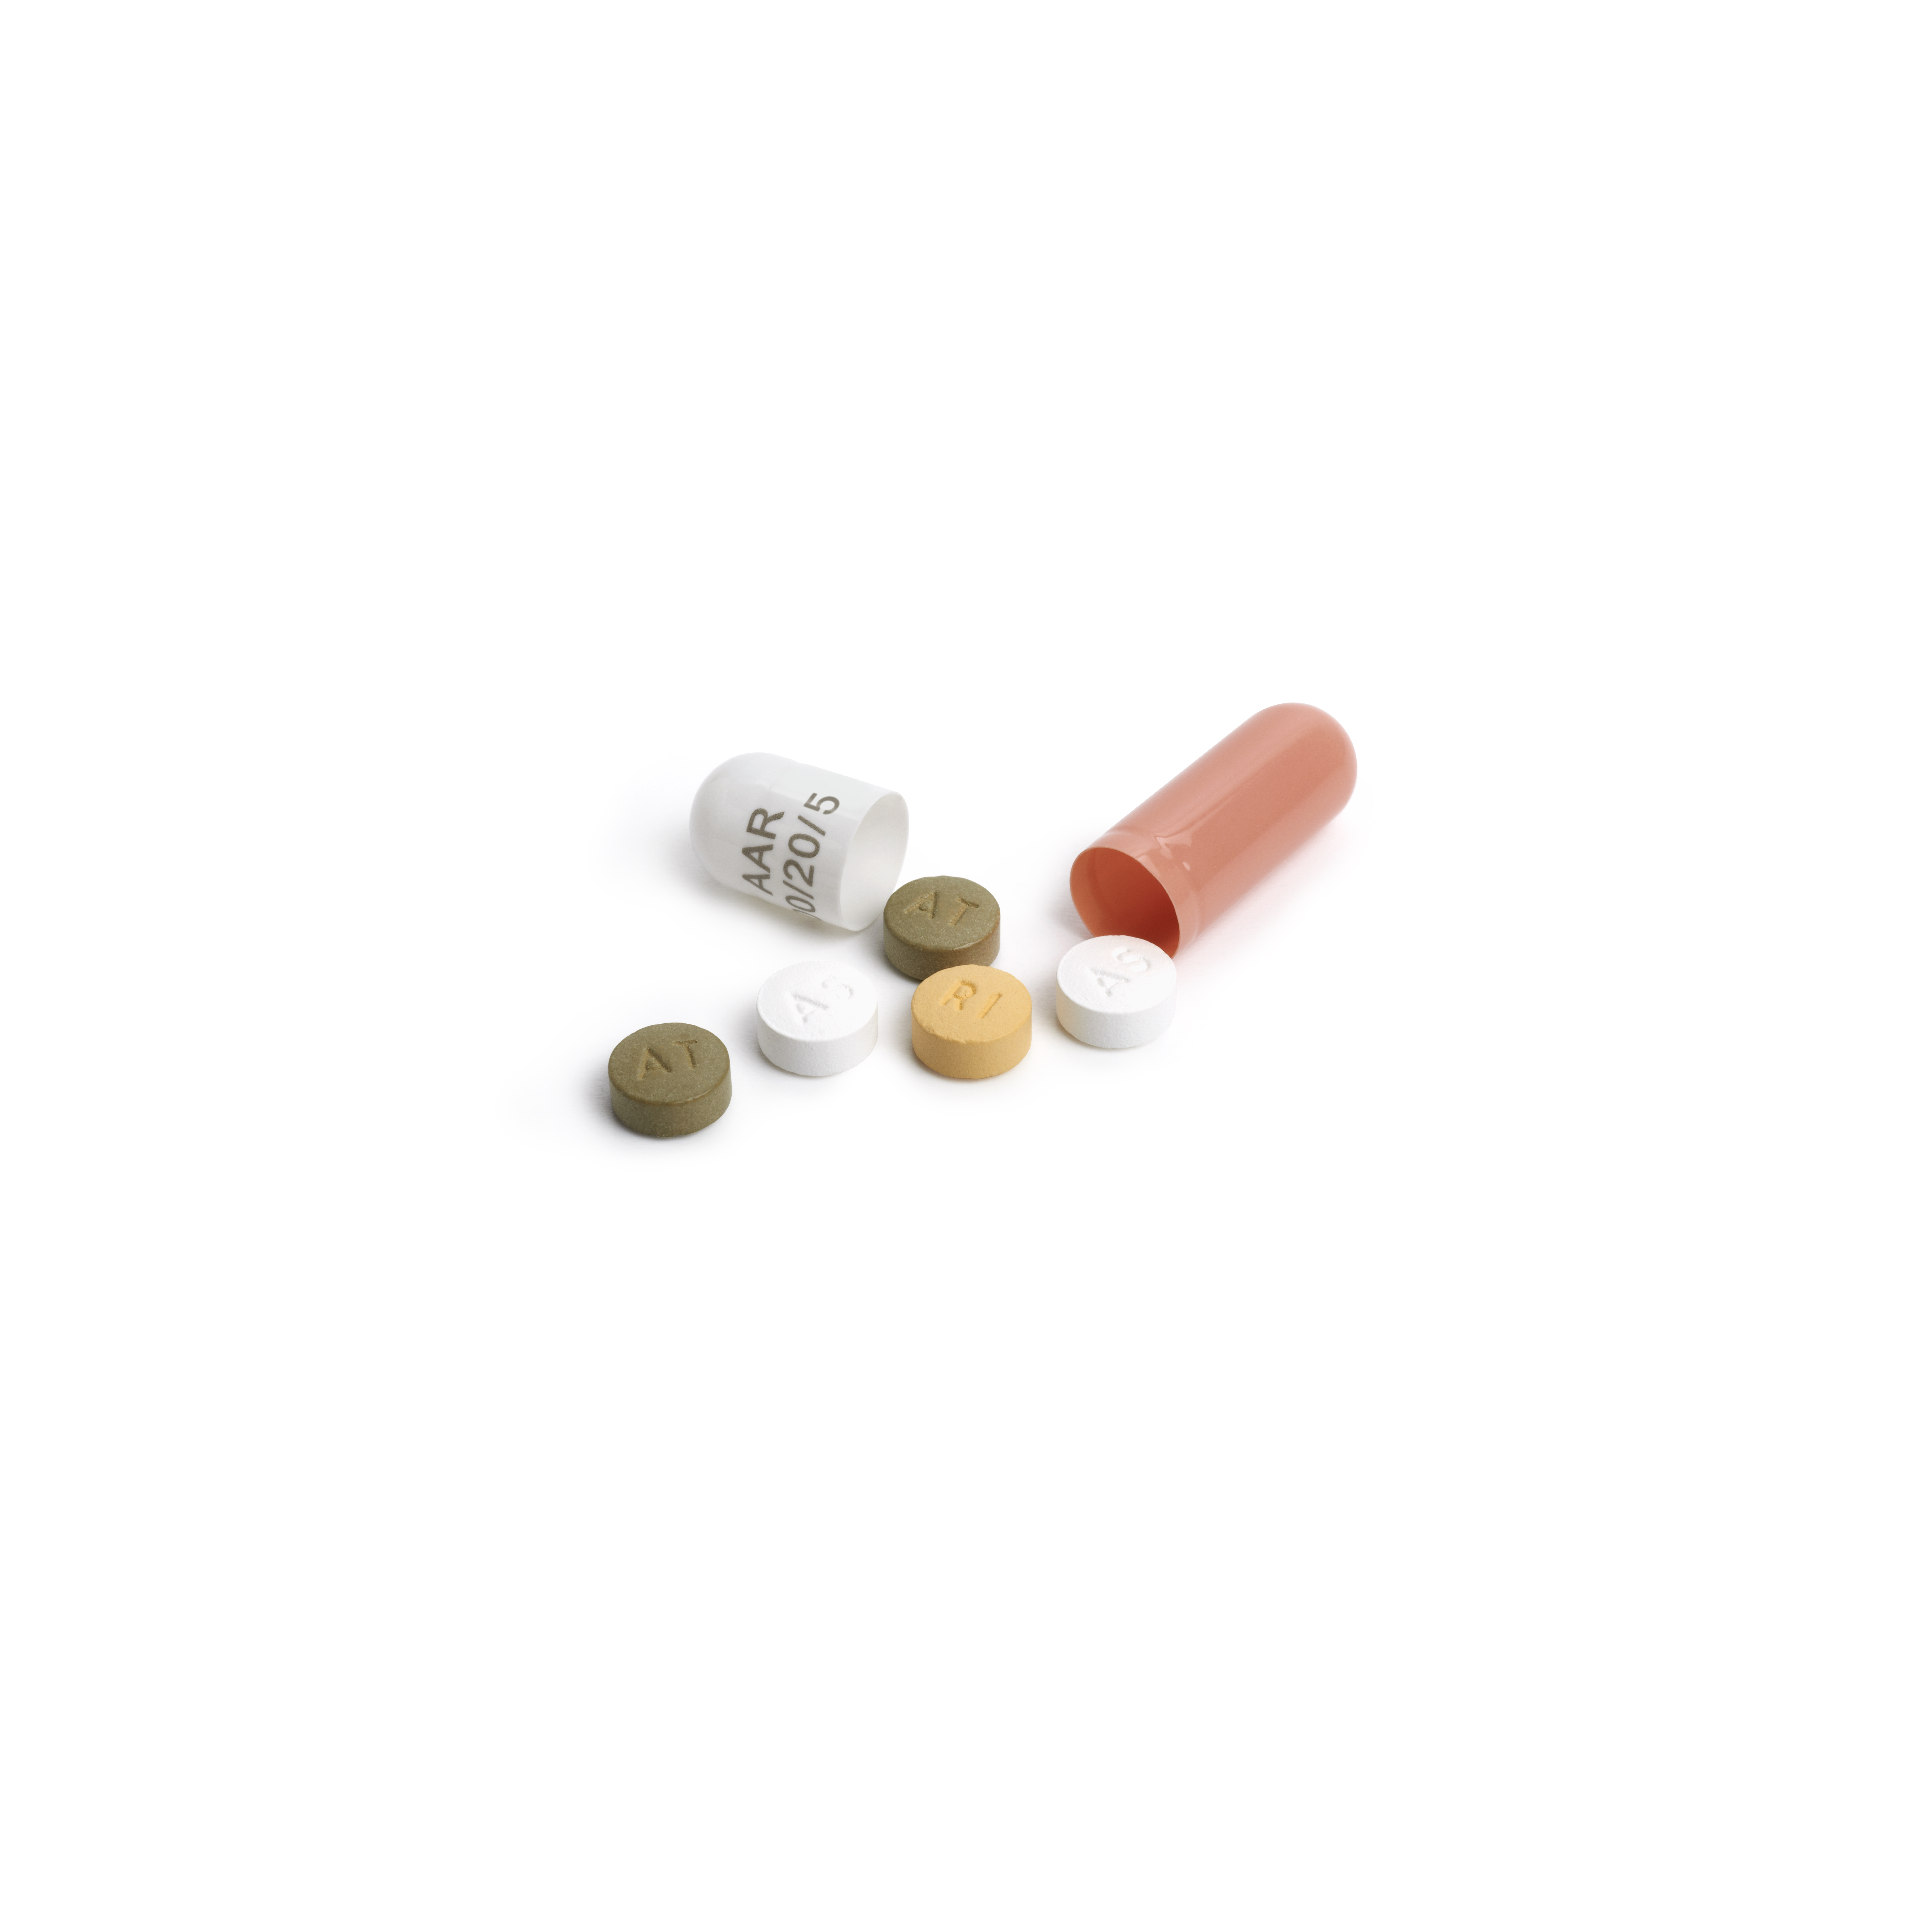 Polipíldora: tres fármacos en una única pastilla